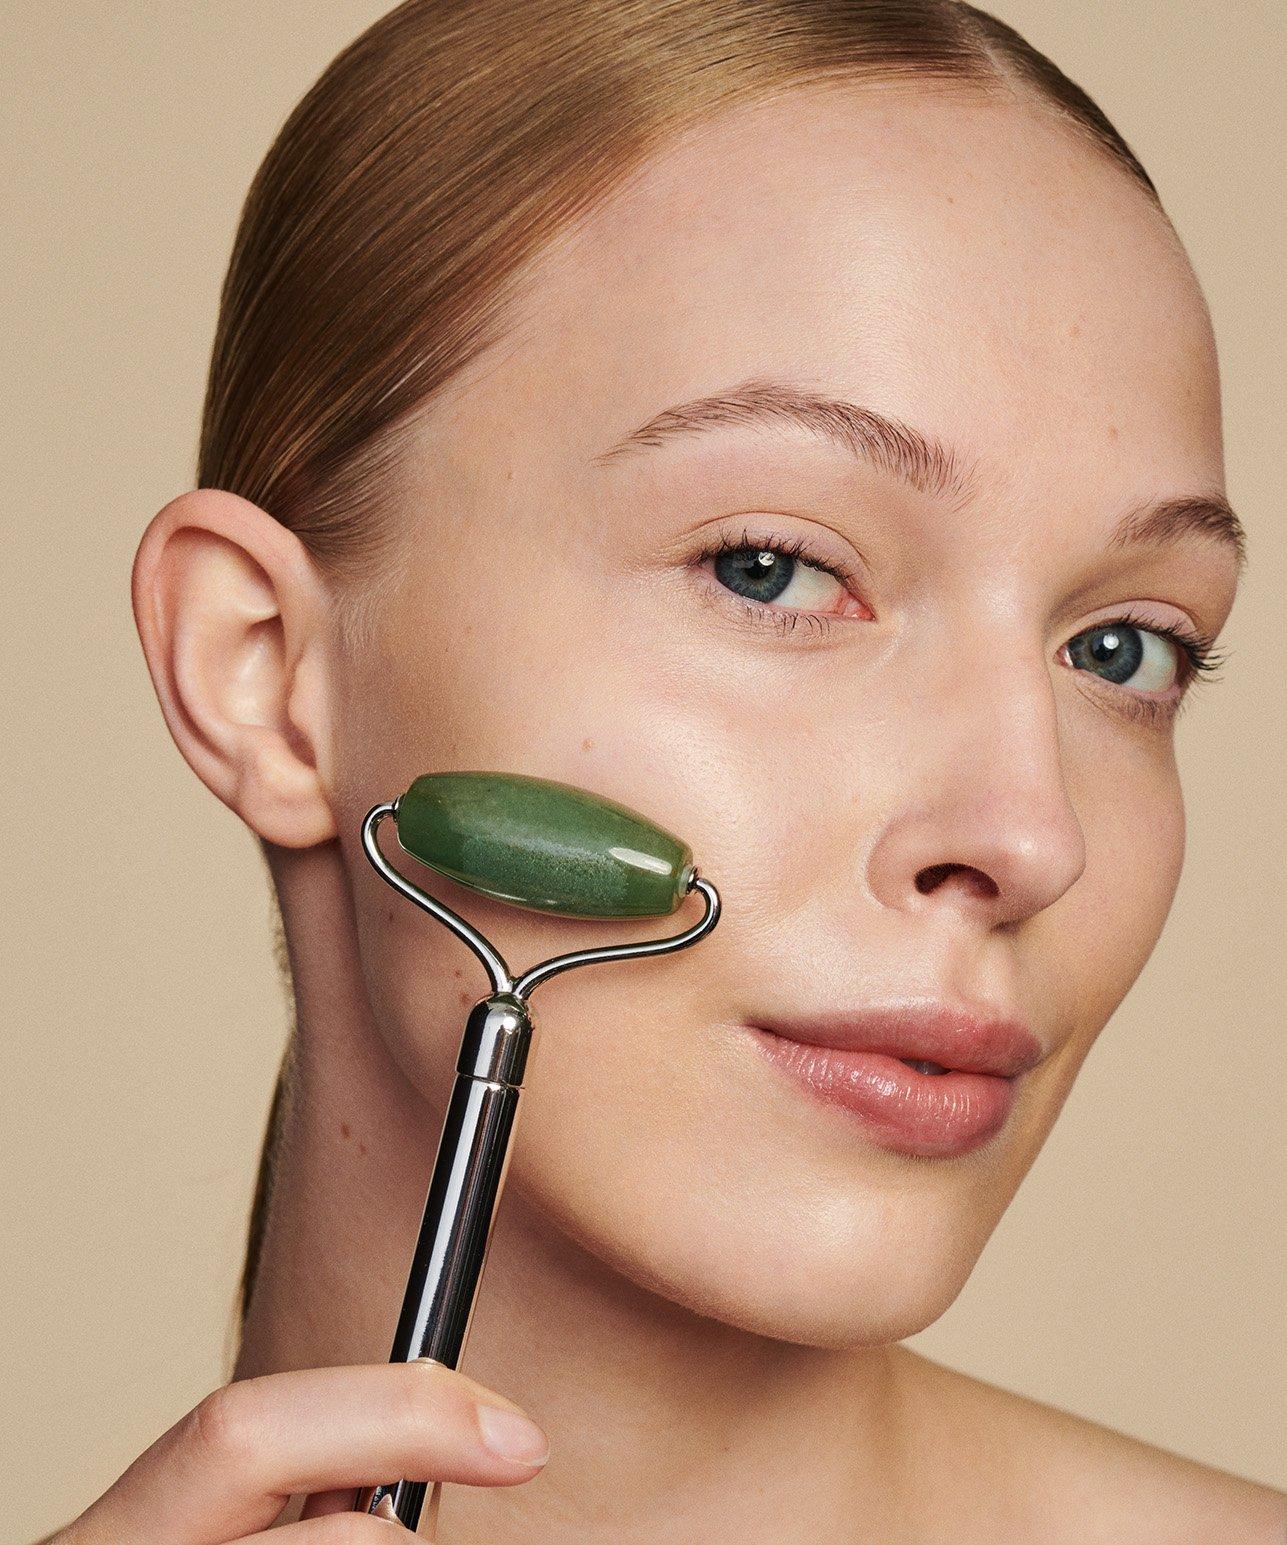 Poren richtig reinigen – Helfen Dampfbäder gegen große Poren im Gesicht